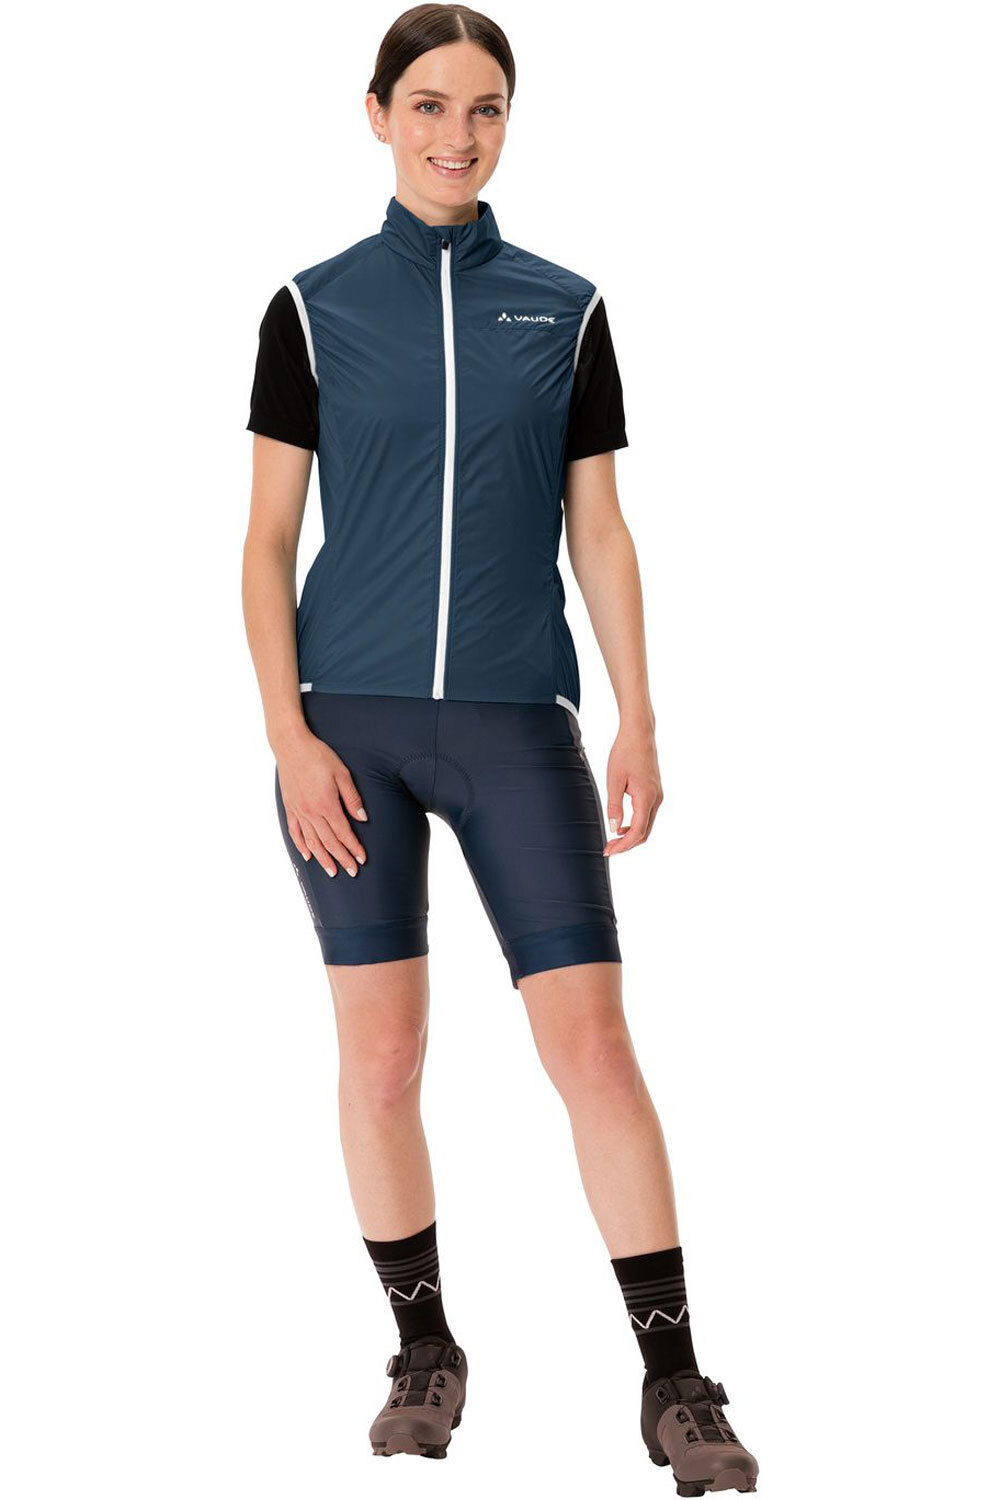 Vaude chaleco ciclismo Women's Air Vest III 04